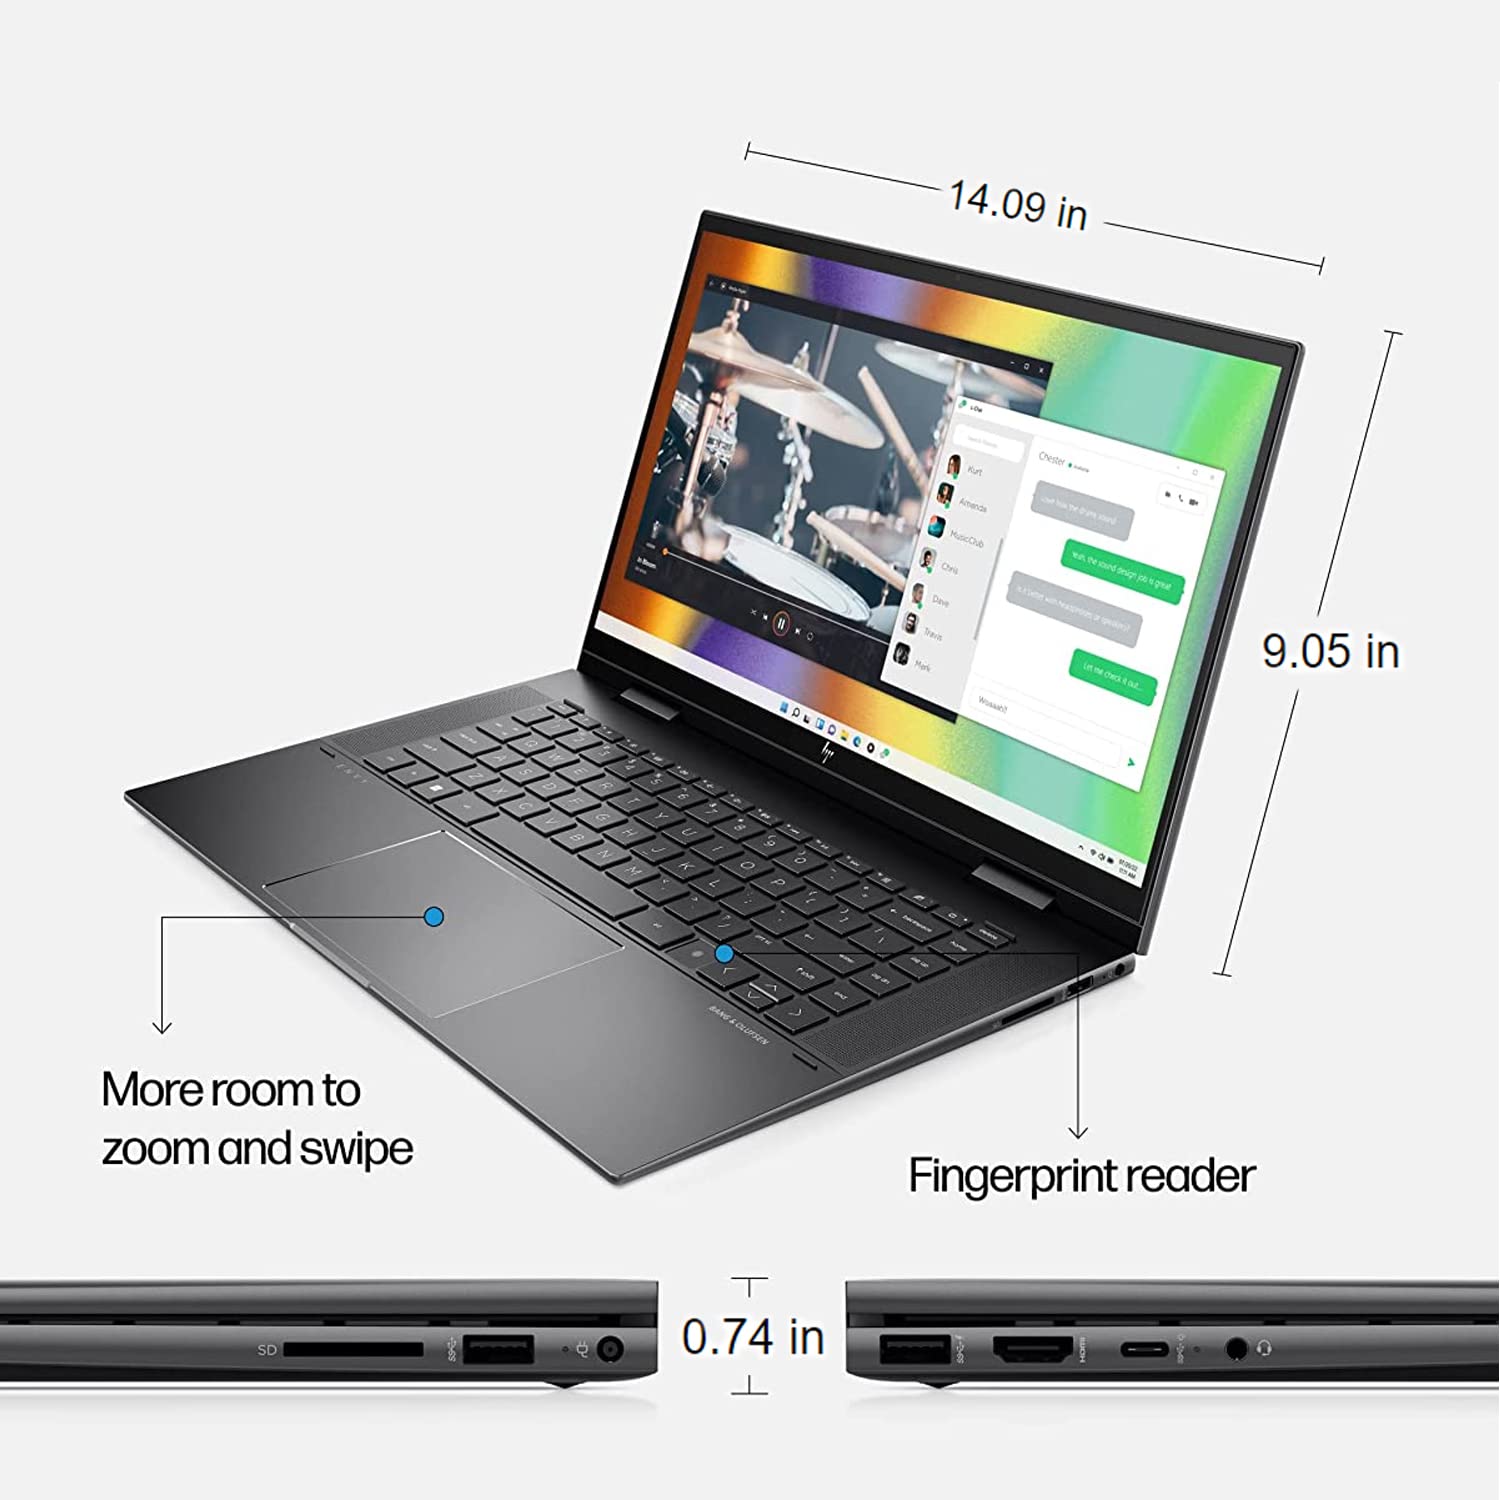 HP Envy X360 2-in-1 Laptop, 15.6" IPS Touchscreen, AMD Ryzen 7 5825U Processor, Backlit Keyboard, Fingerprint Reader, Wi-Fi 6, Audio by Bang & Olufsen, Windows 11 (16GB RAM | 2TB PCIe SSD)